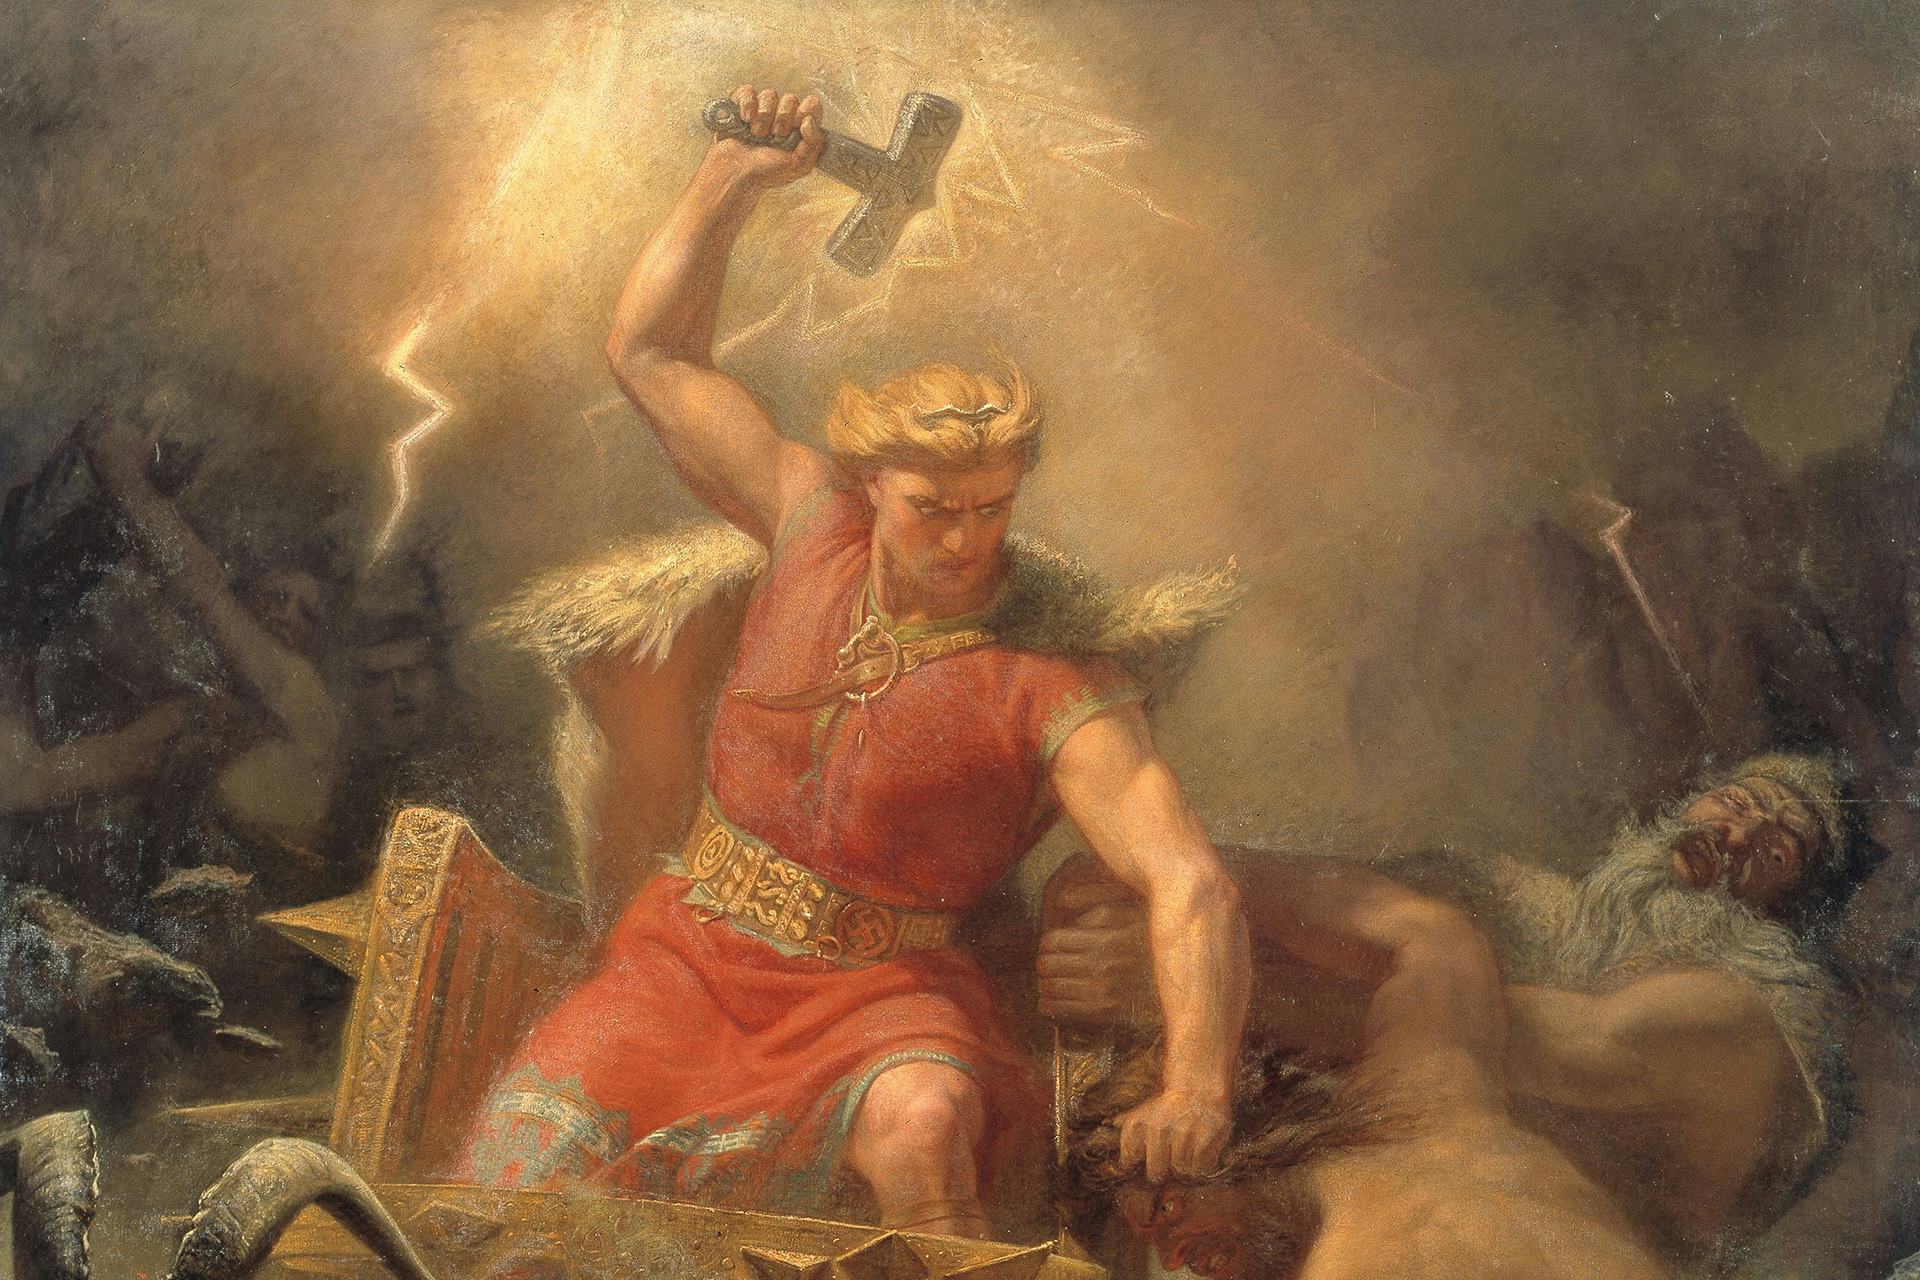 Thor, God of Thunder and Wielder of Mjolnir